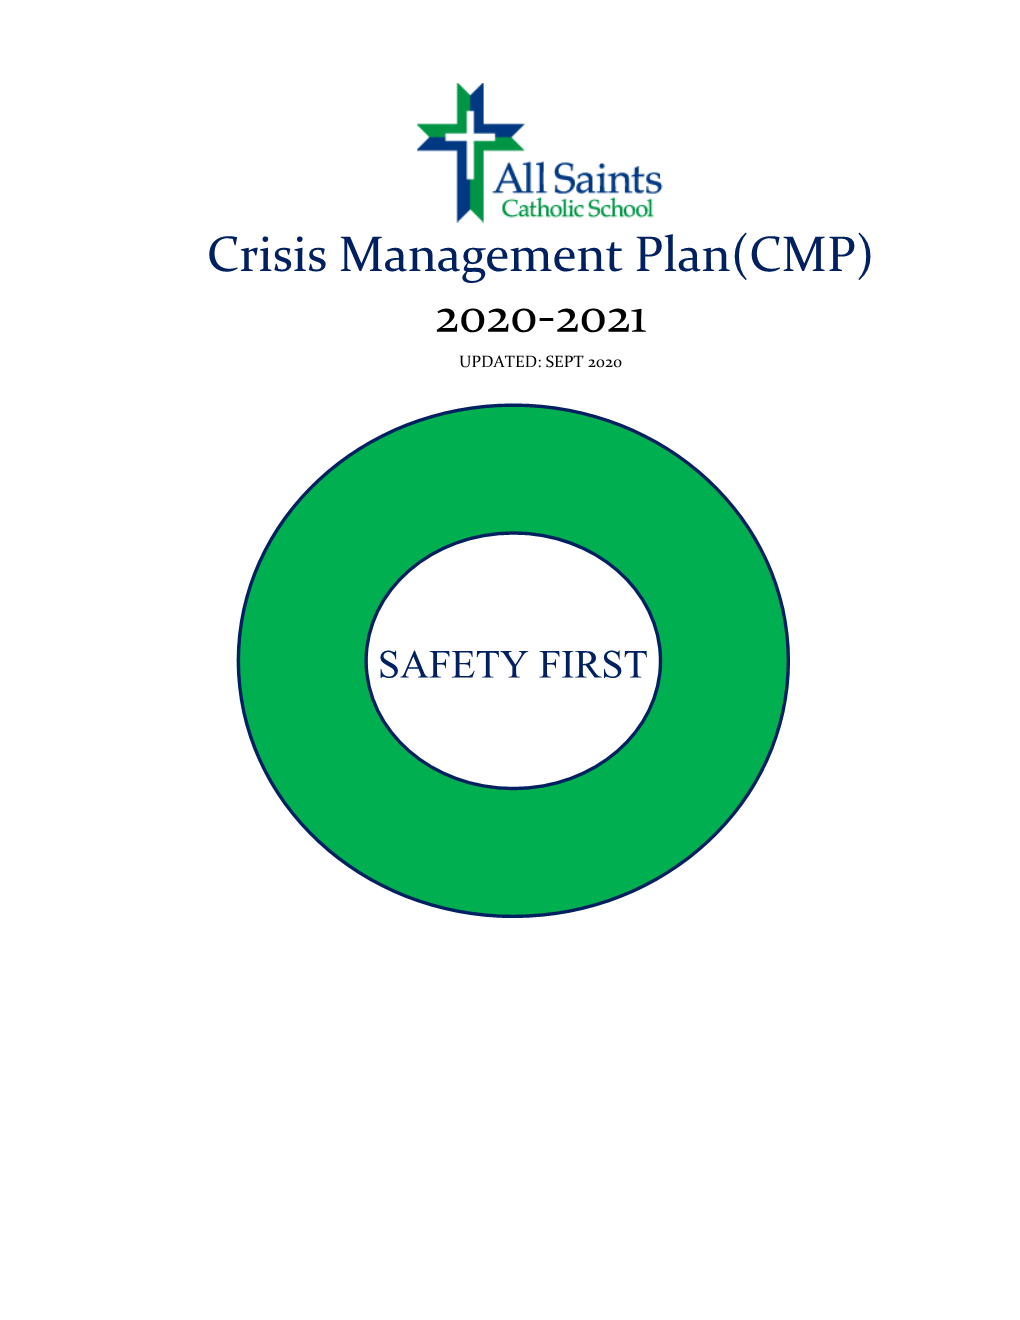 All Saints Crisis Management Plan 2020-2021